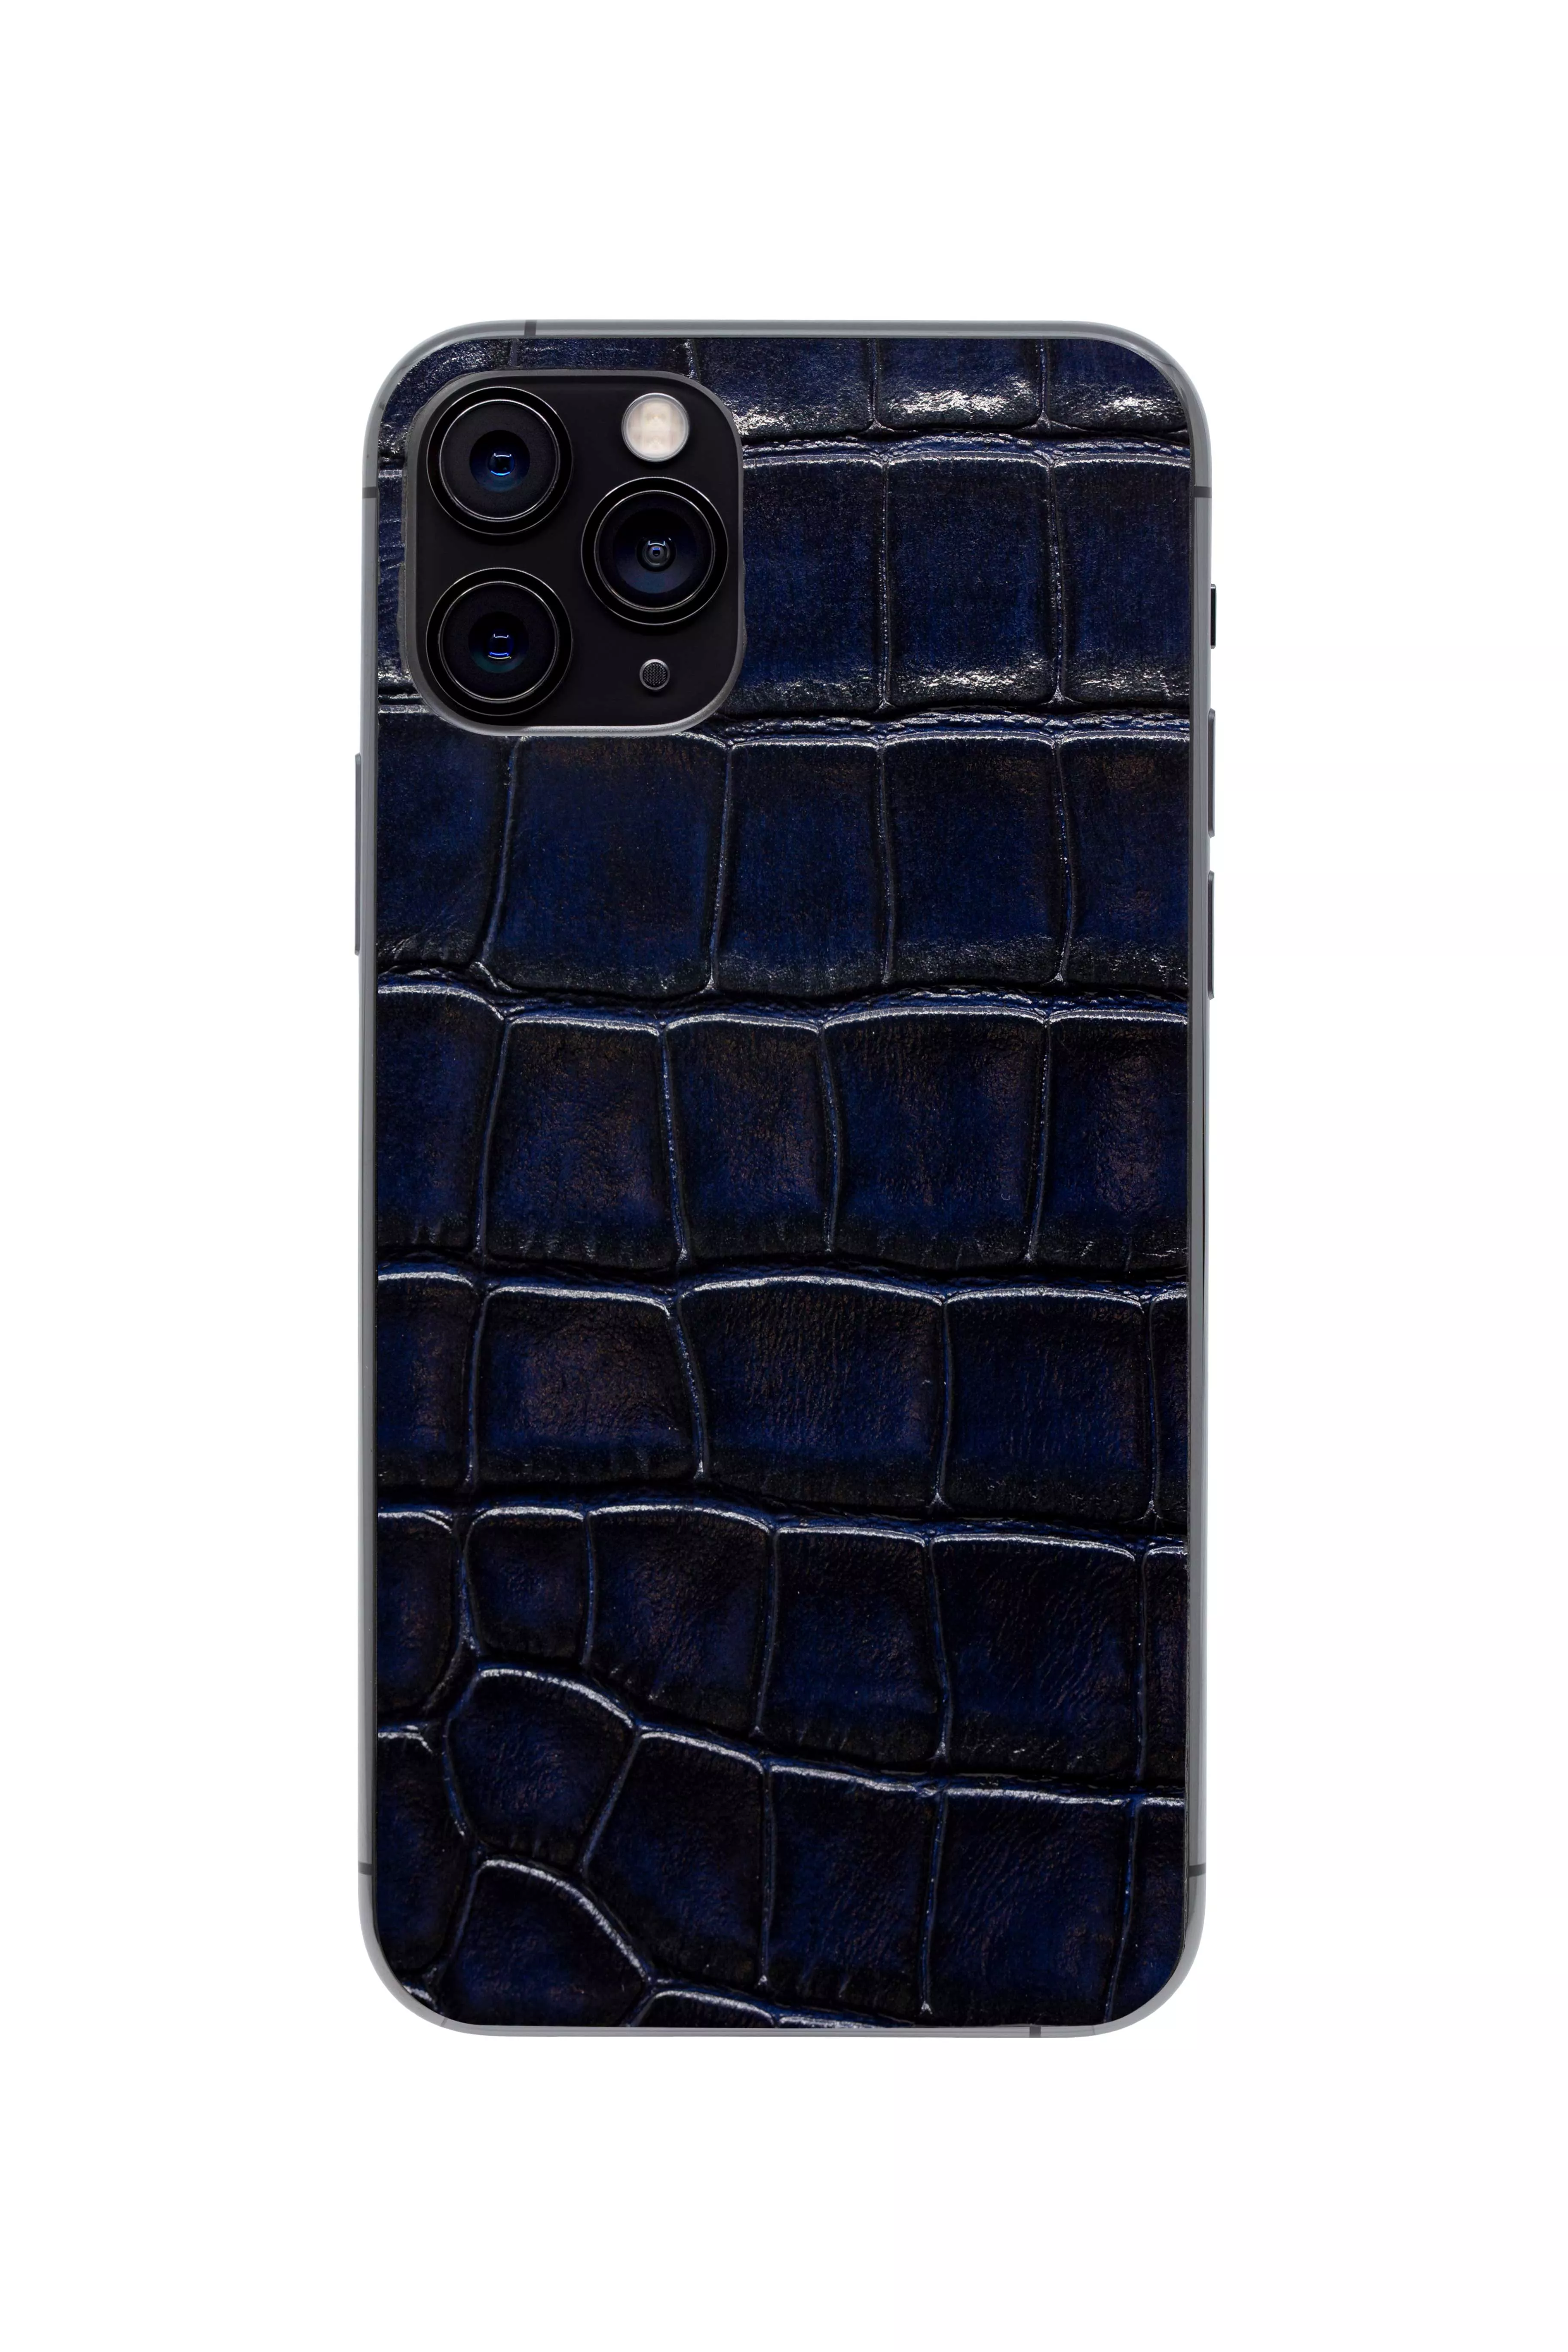 Защитная наклейка из натуральной кожи для iPhone 11 Pro, Вид Темно-синий. Вид 1